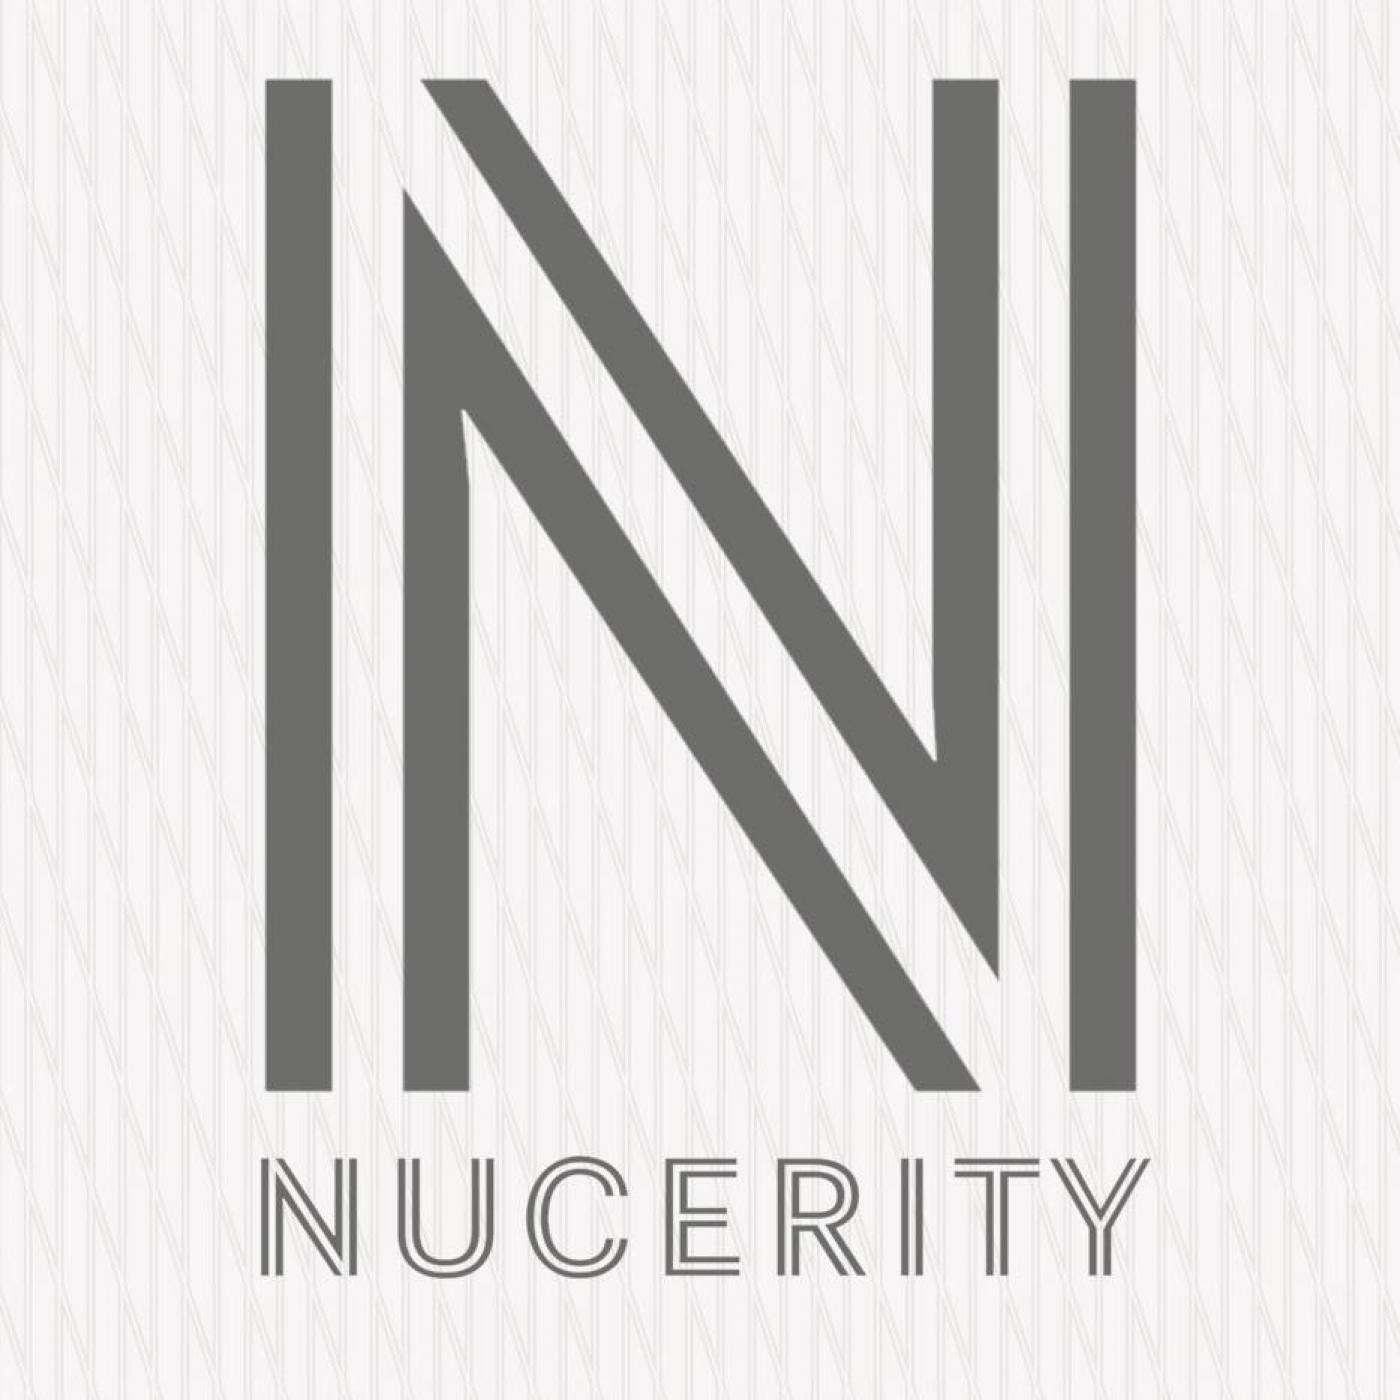 Todo sobre Skincerity y los productos NuCerity